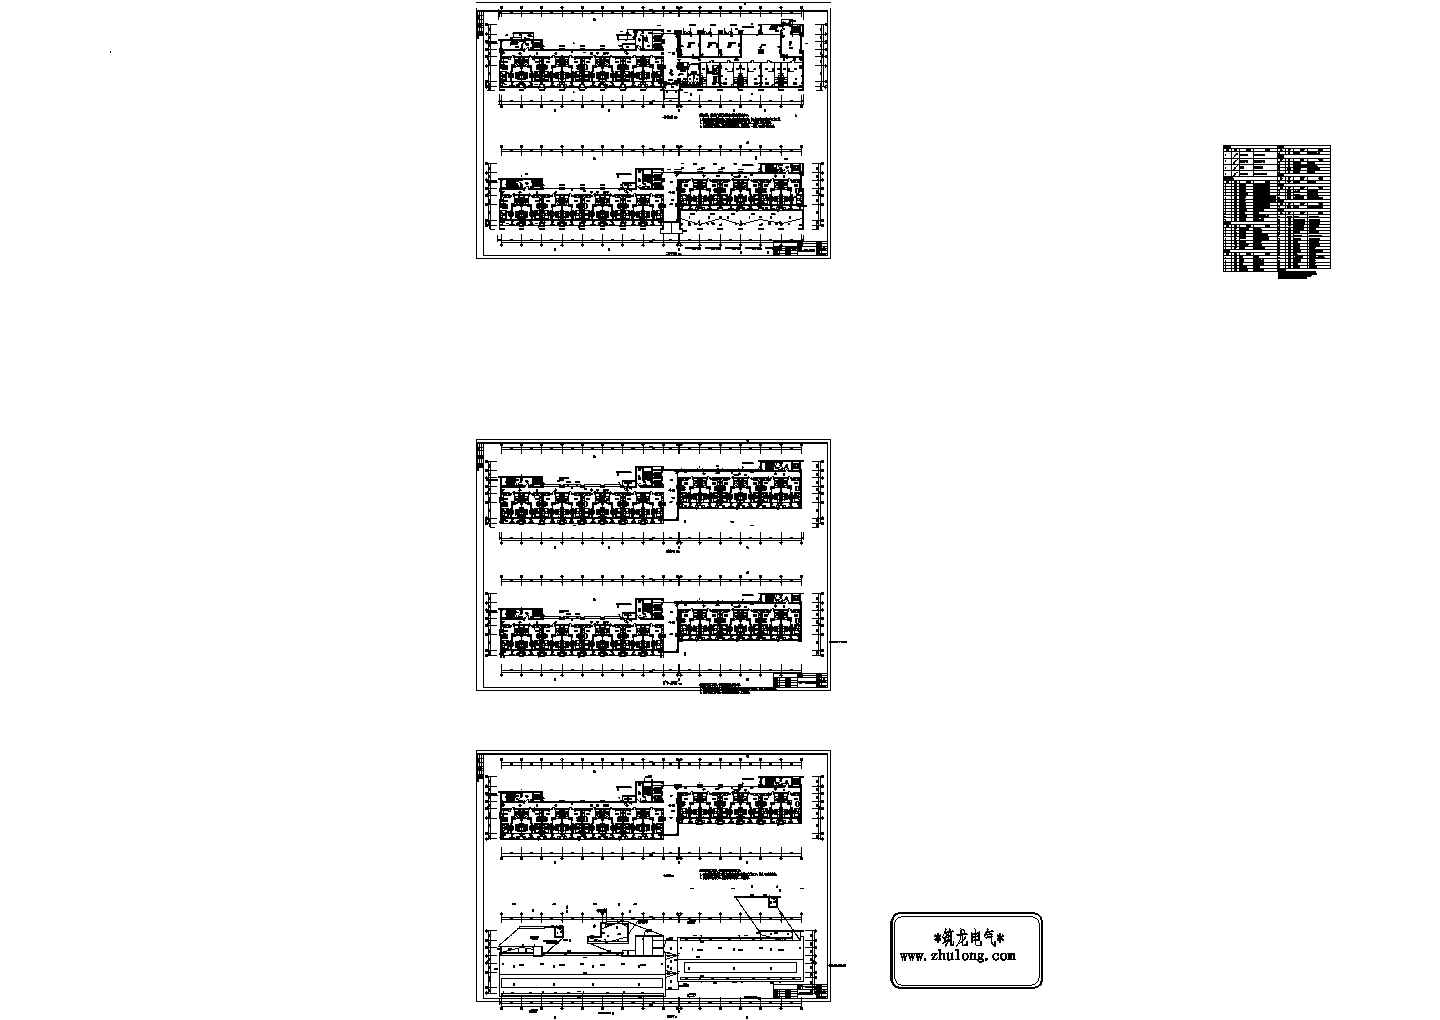 [方案][江苏]公寓建筑项目弱电智能化系统设计方案展示（技术标，含完整平面图）